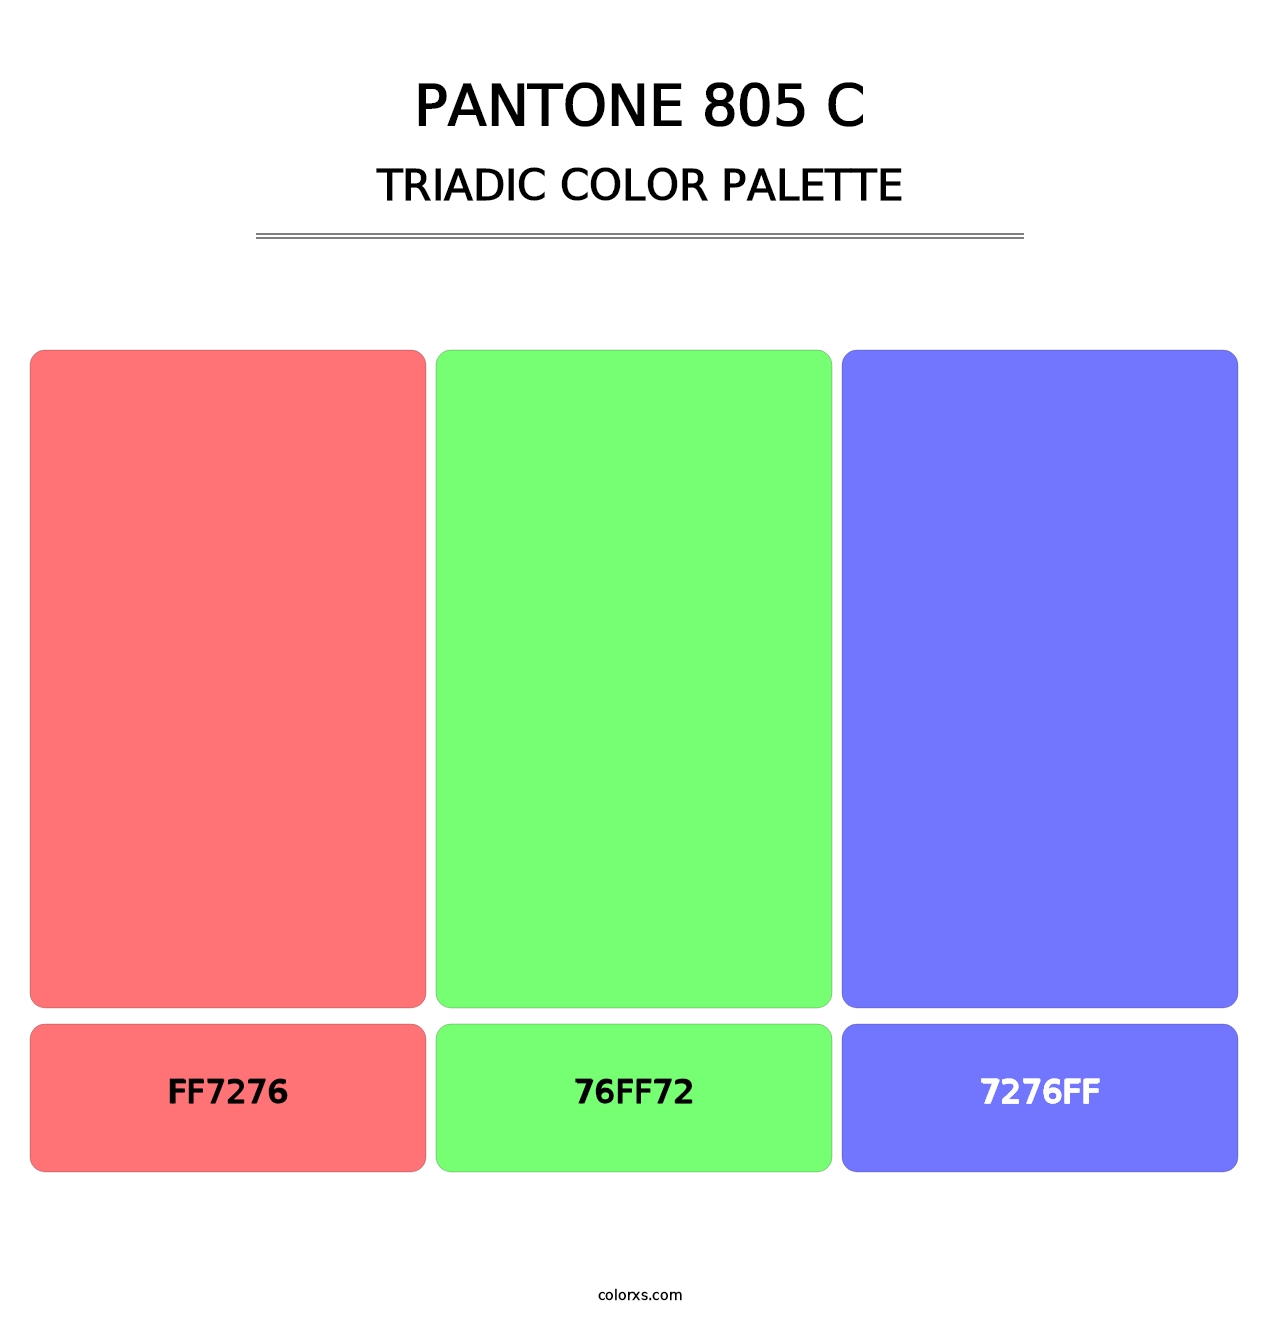 PANTONE 805 C - Triadic Color Palette